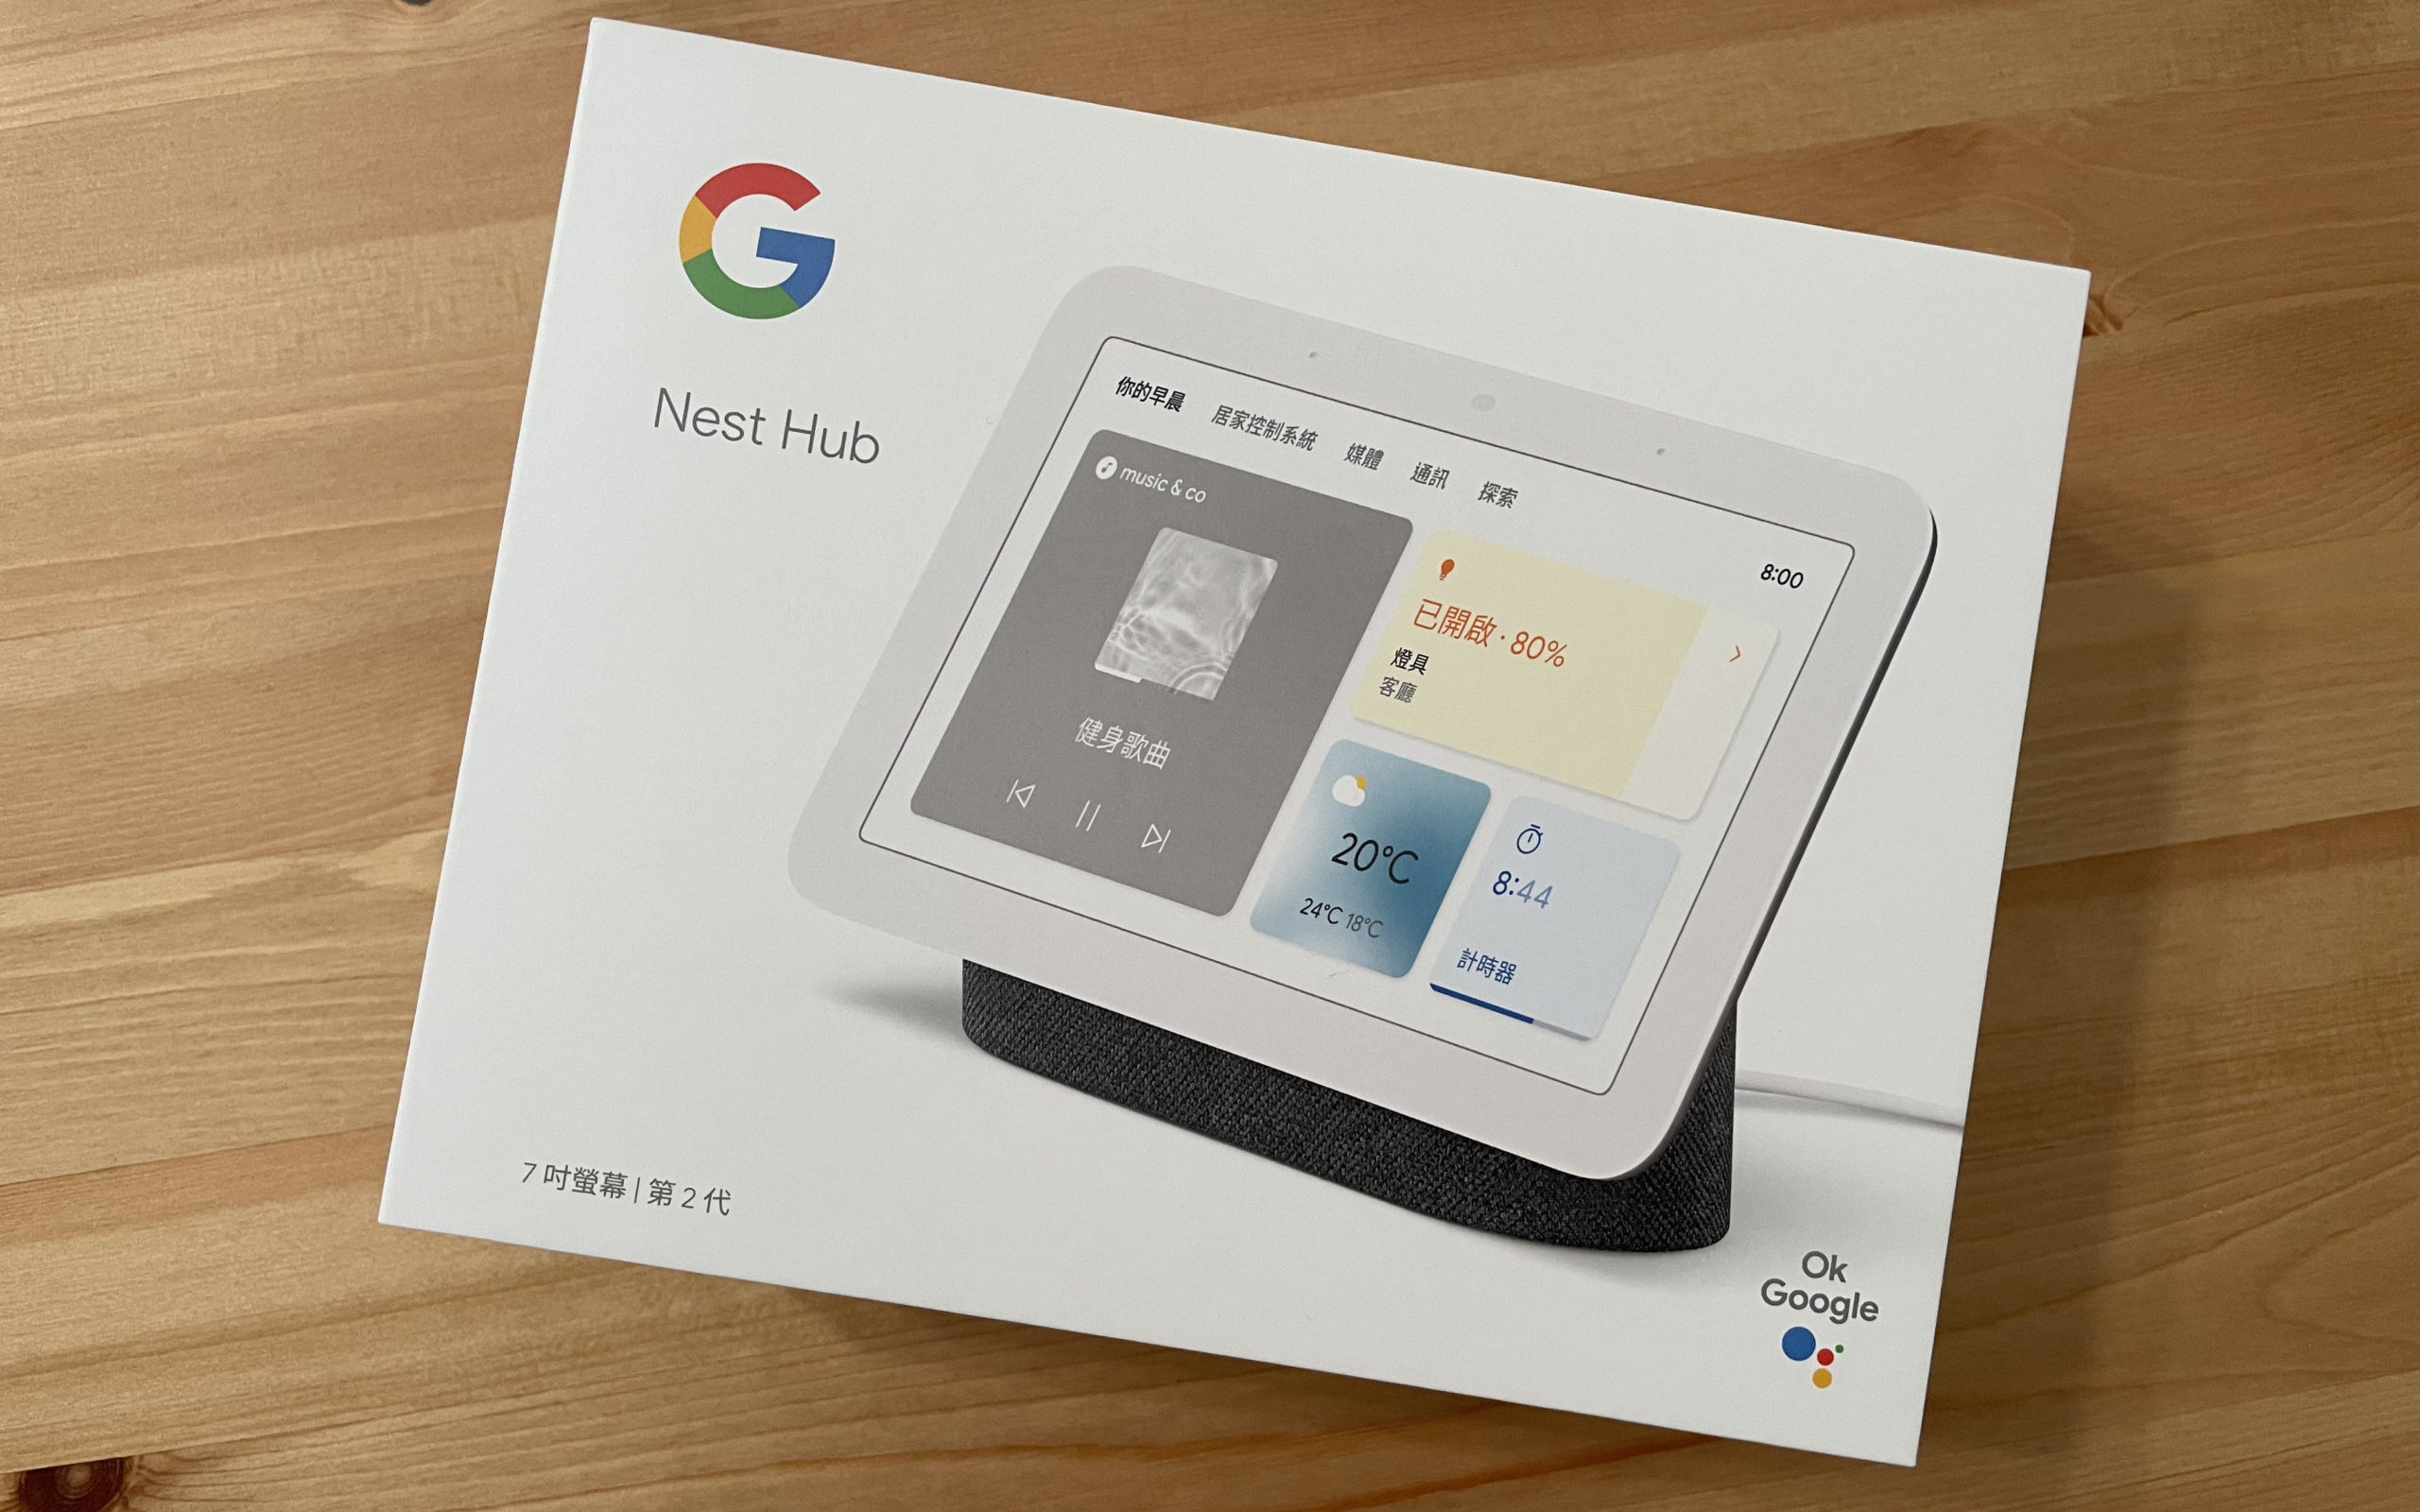 高級品市場 (第二世代) HUB NEST GOOGLE Google - スピーカー - hlt.no